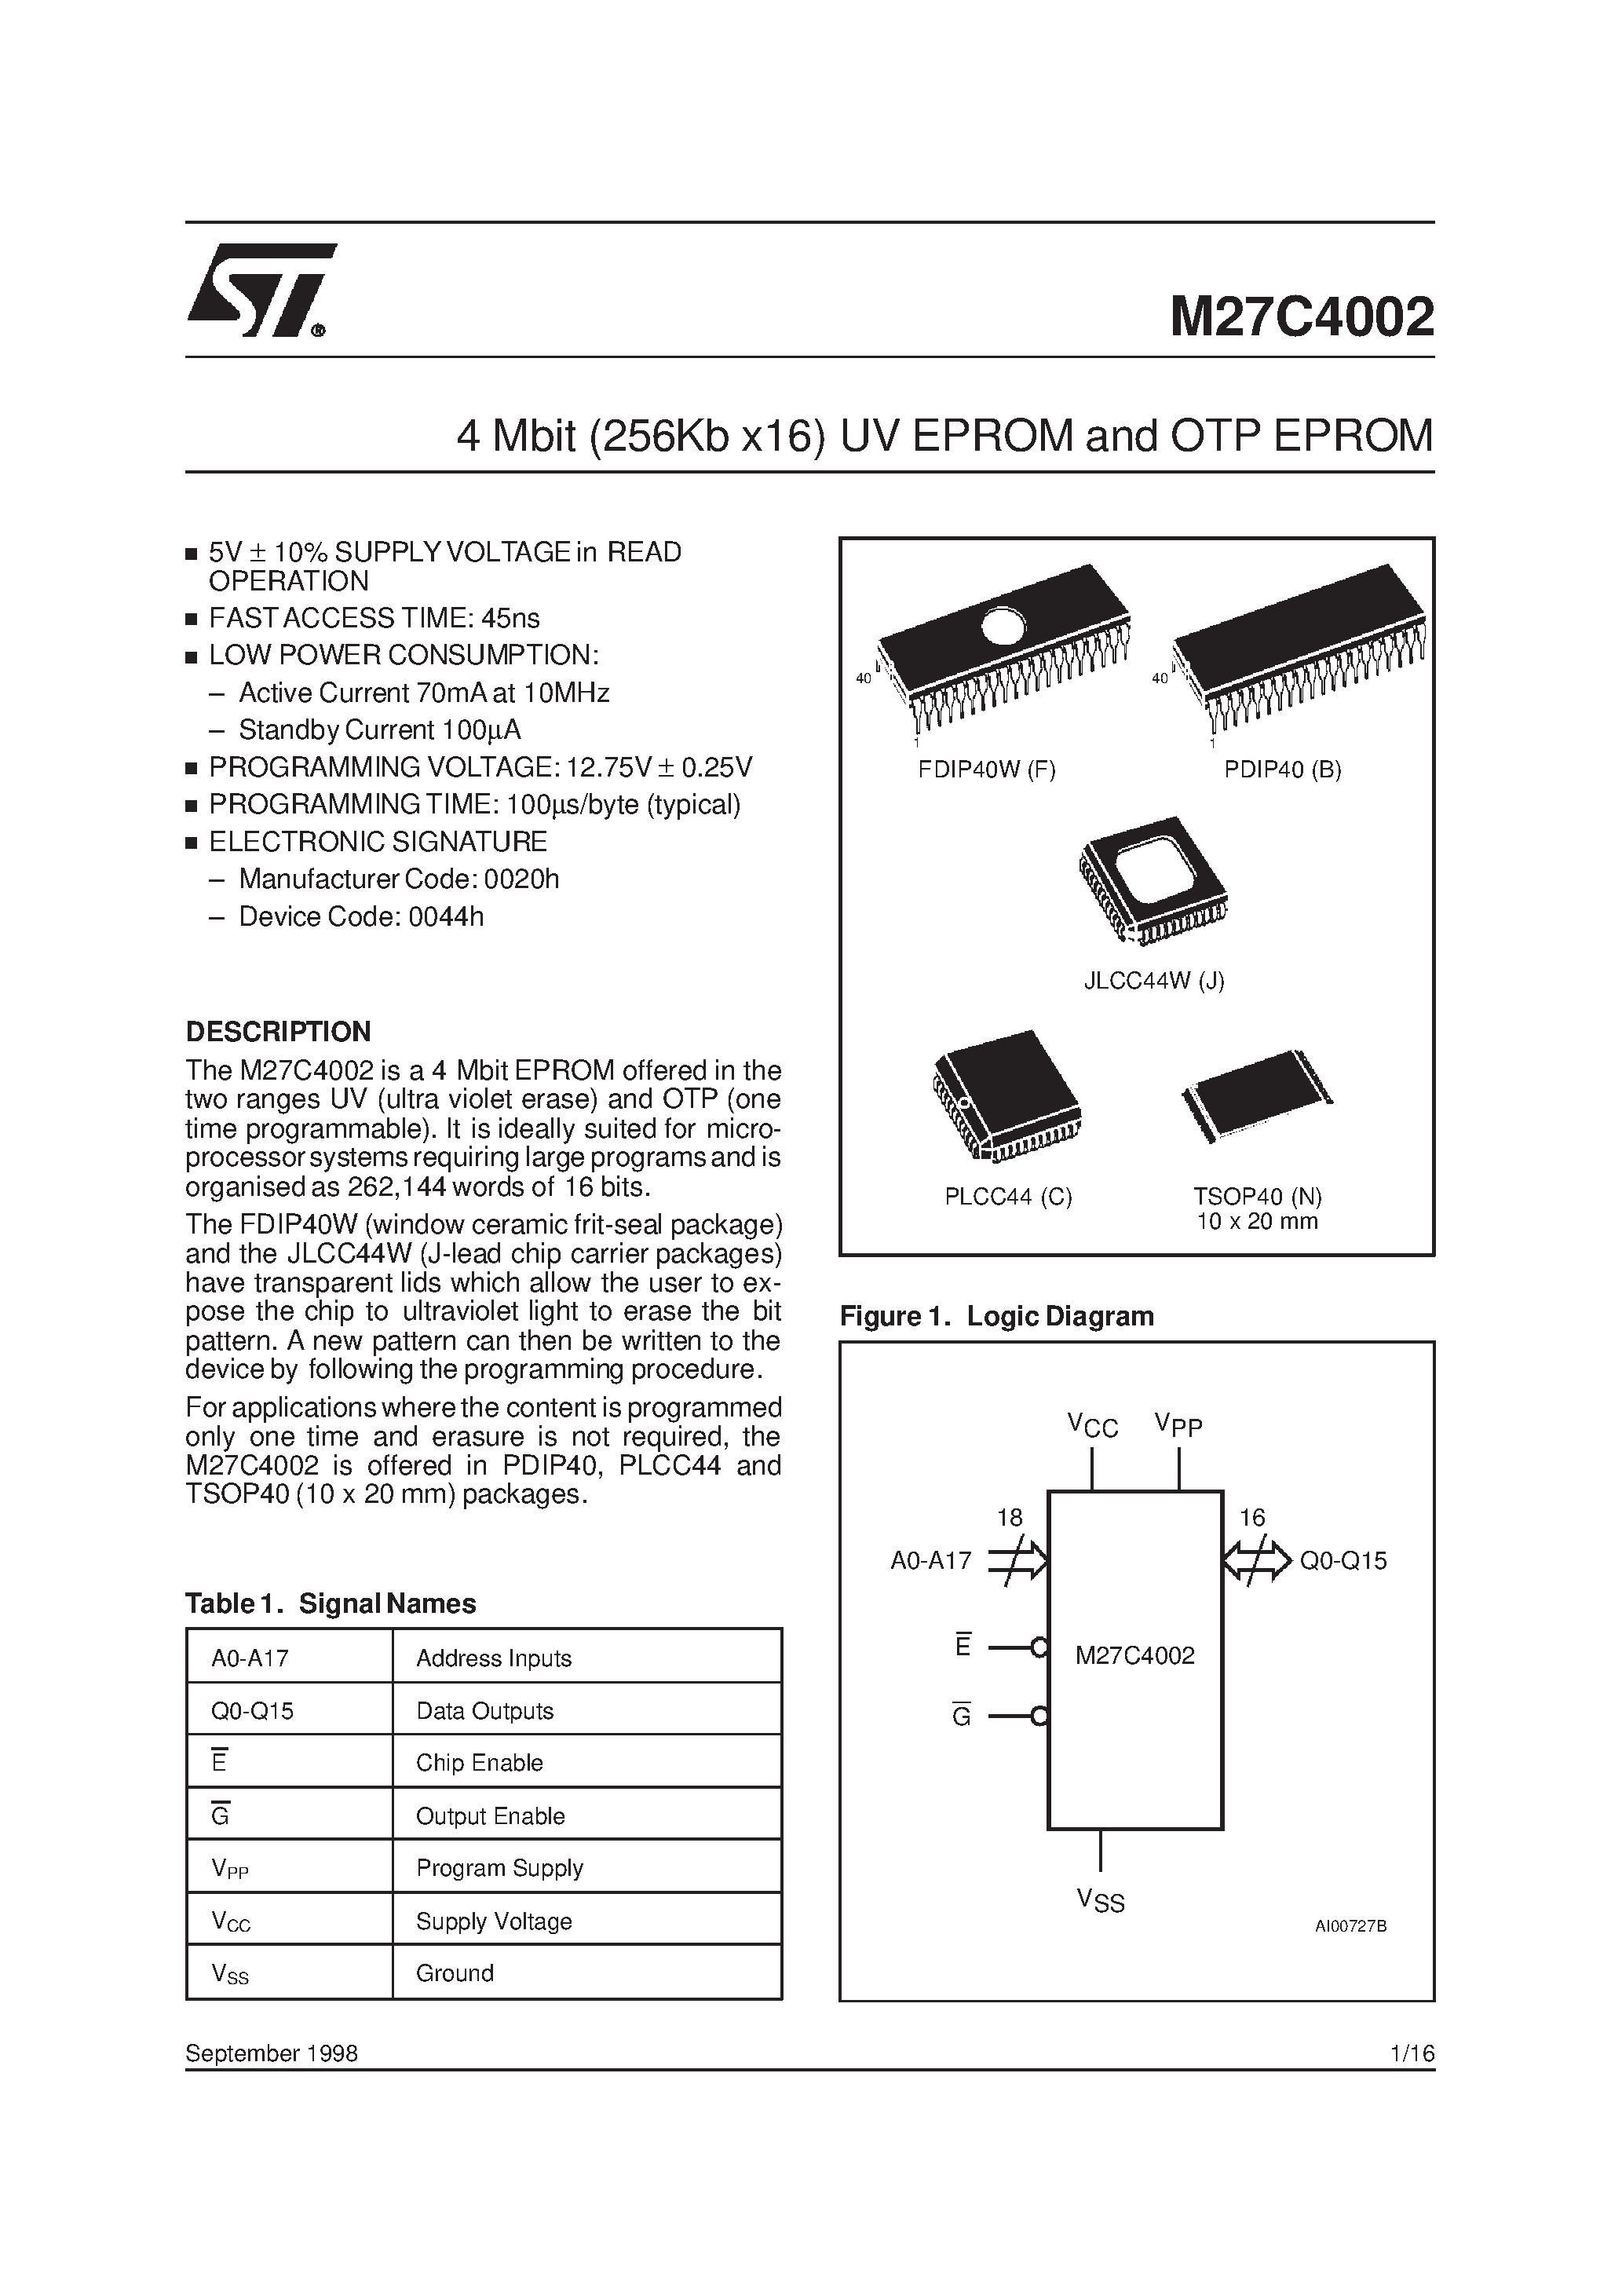 Datasheet M27C4002-10C1TR - 4 Mbit 256Kb x16 UV EPROM and OTP EPROM page 1